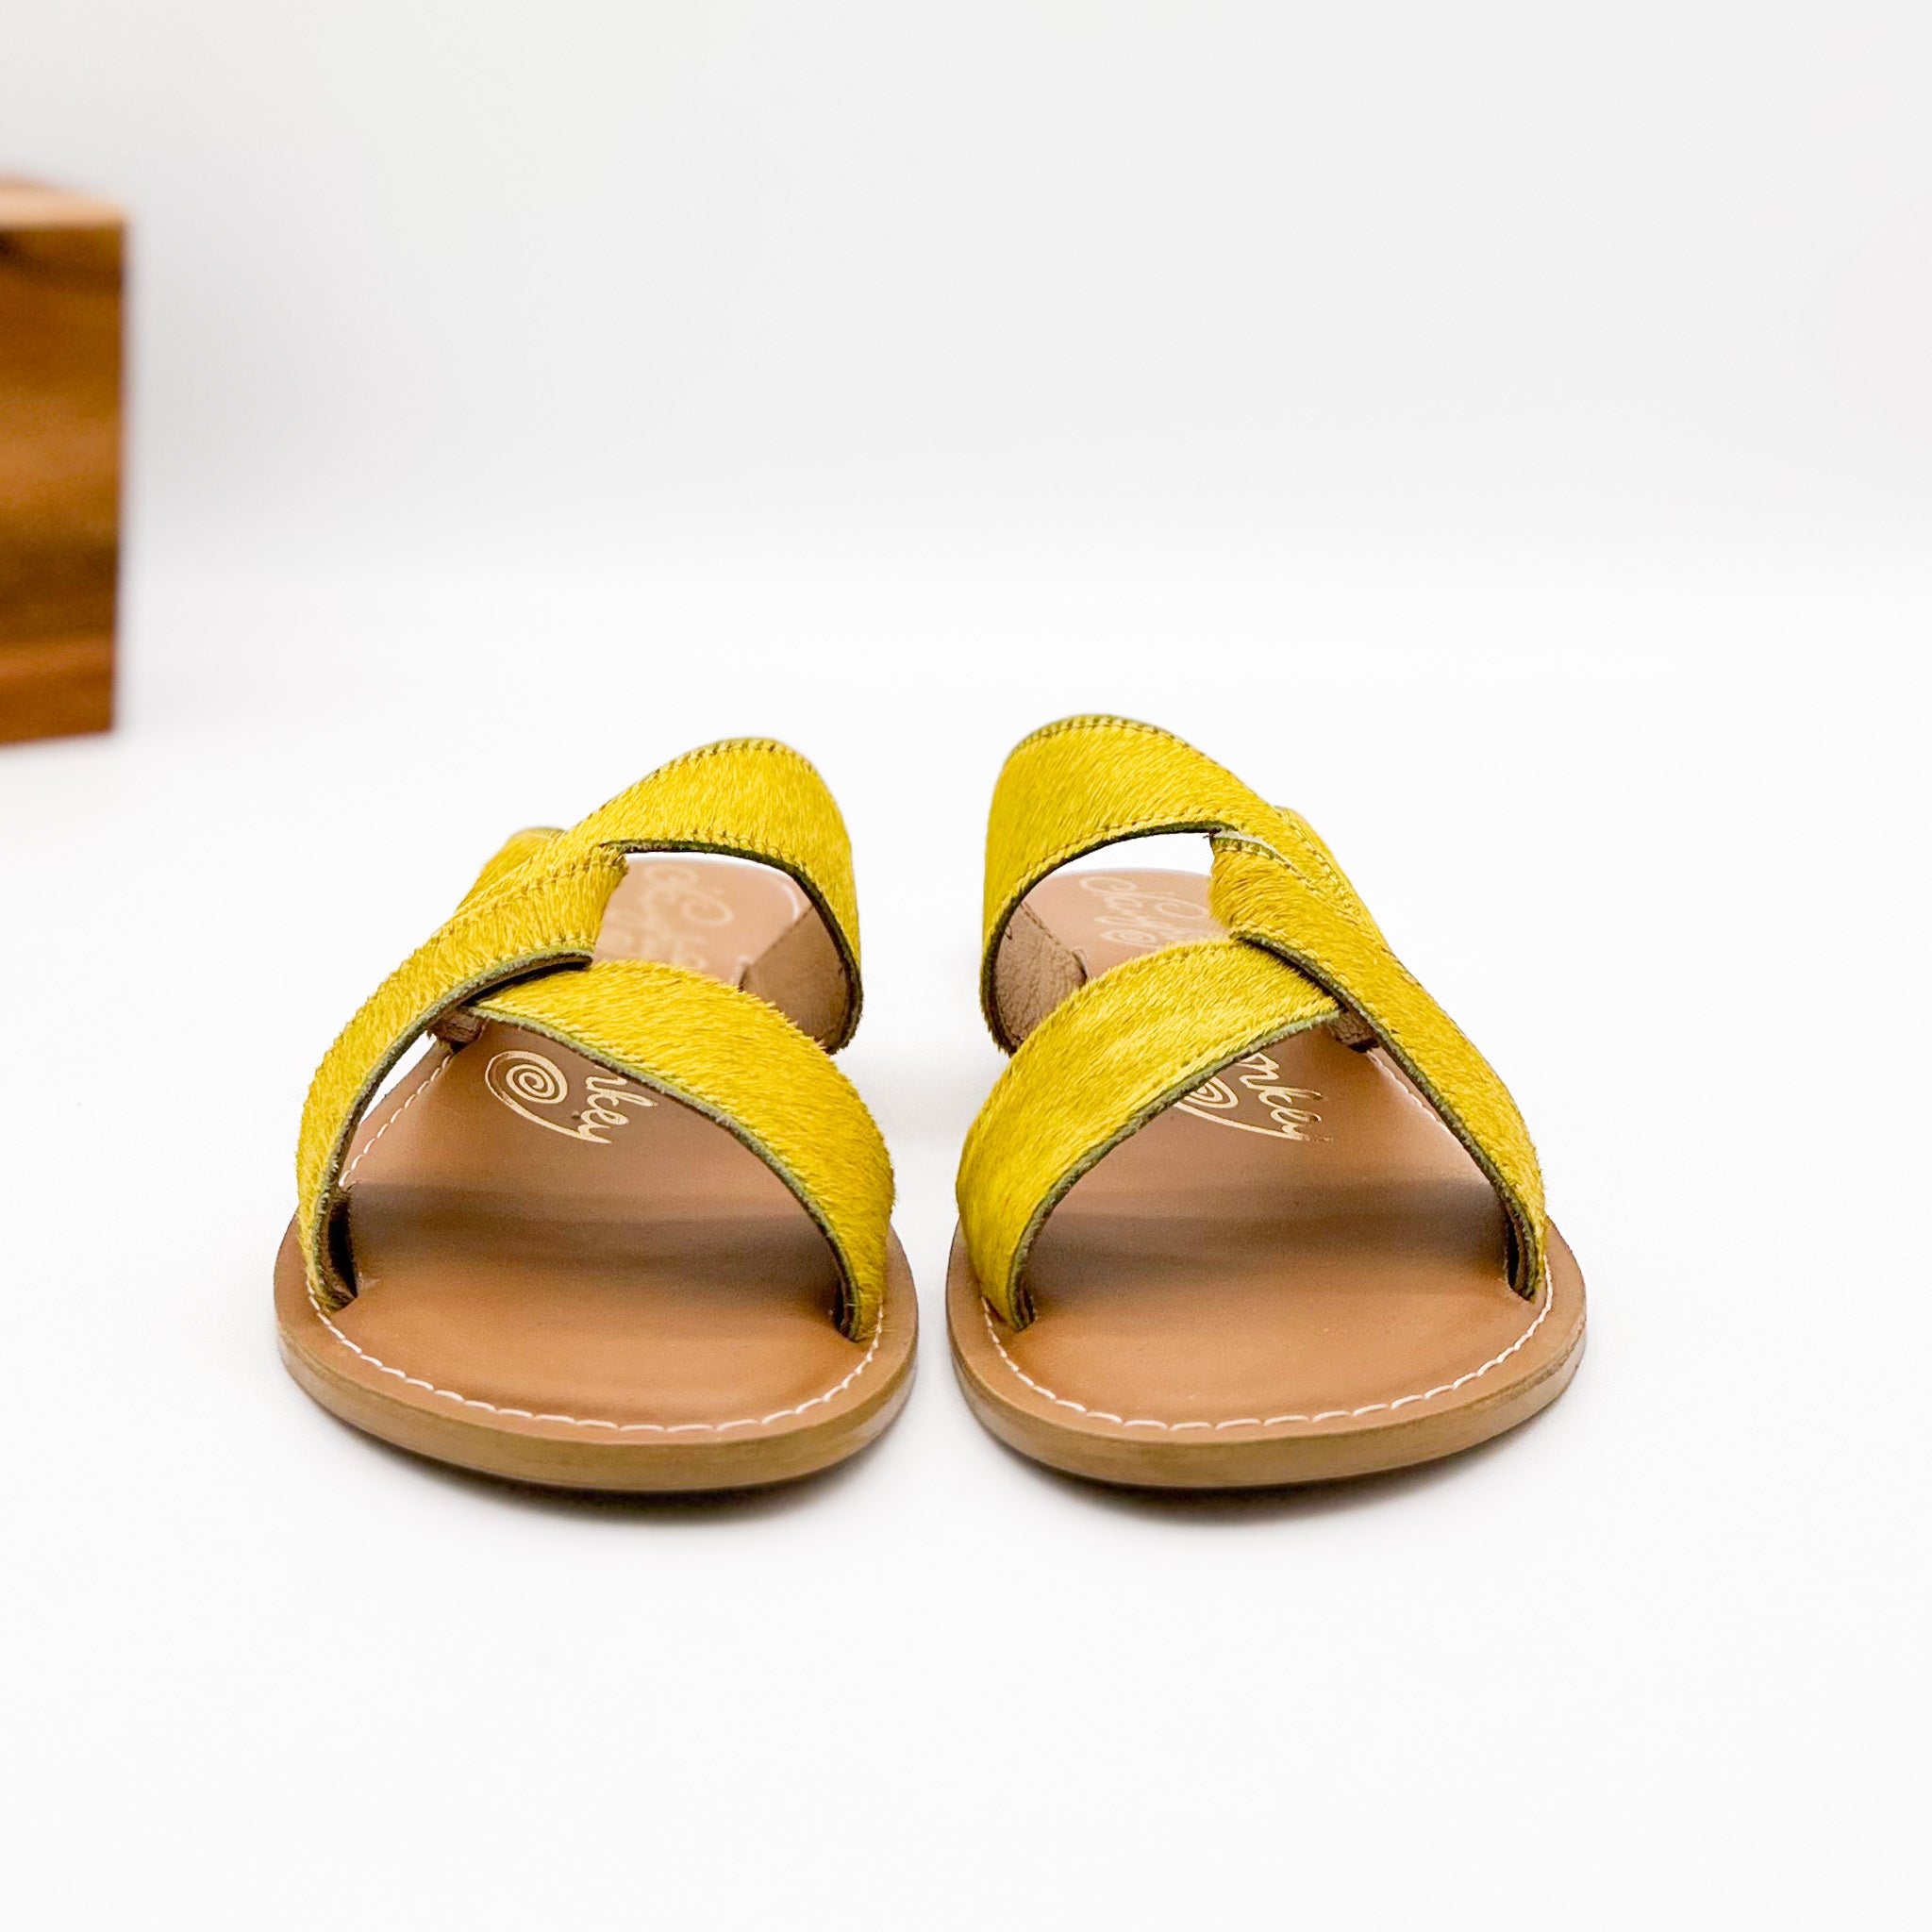 Conga Sandal in Yellow